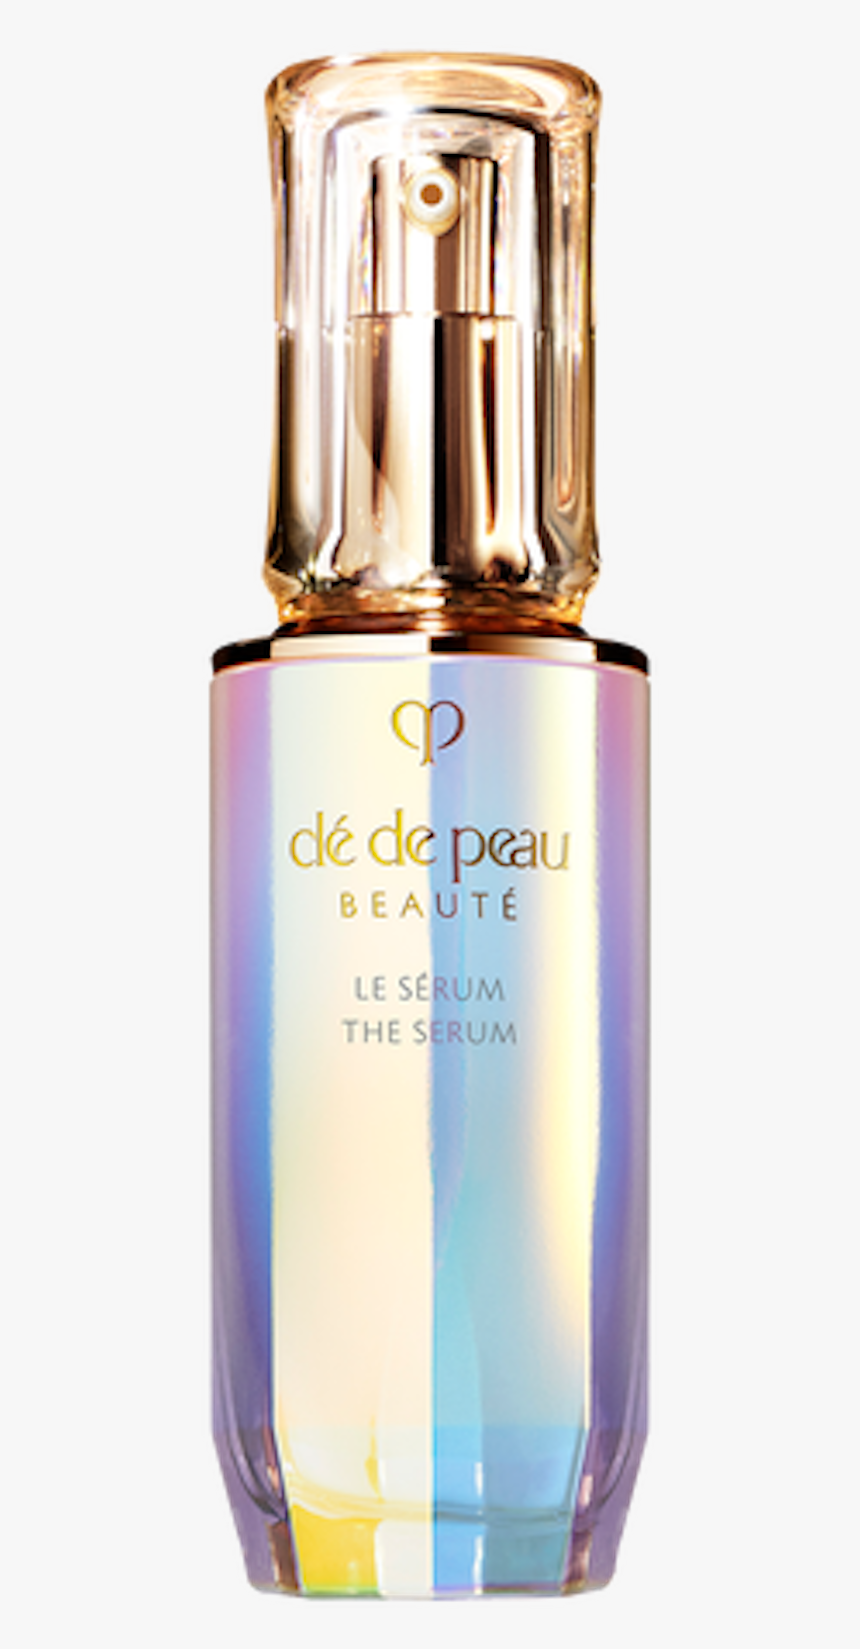 Clé De Peau Beauté The Serum, HD Png Download, Free Download